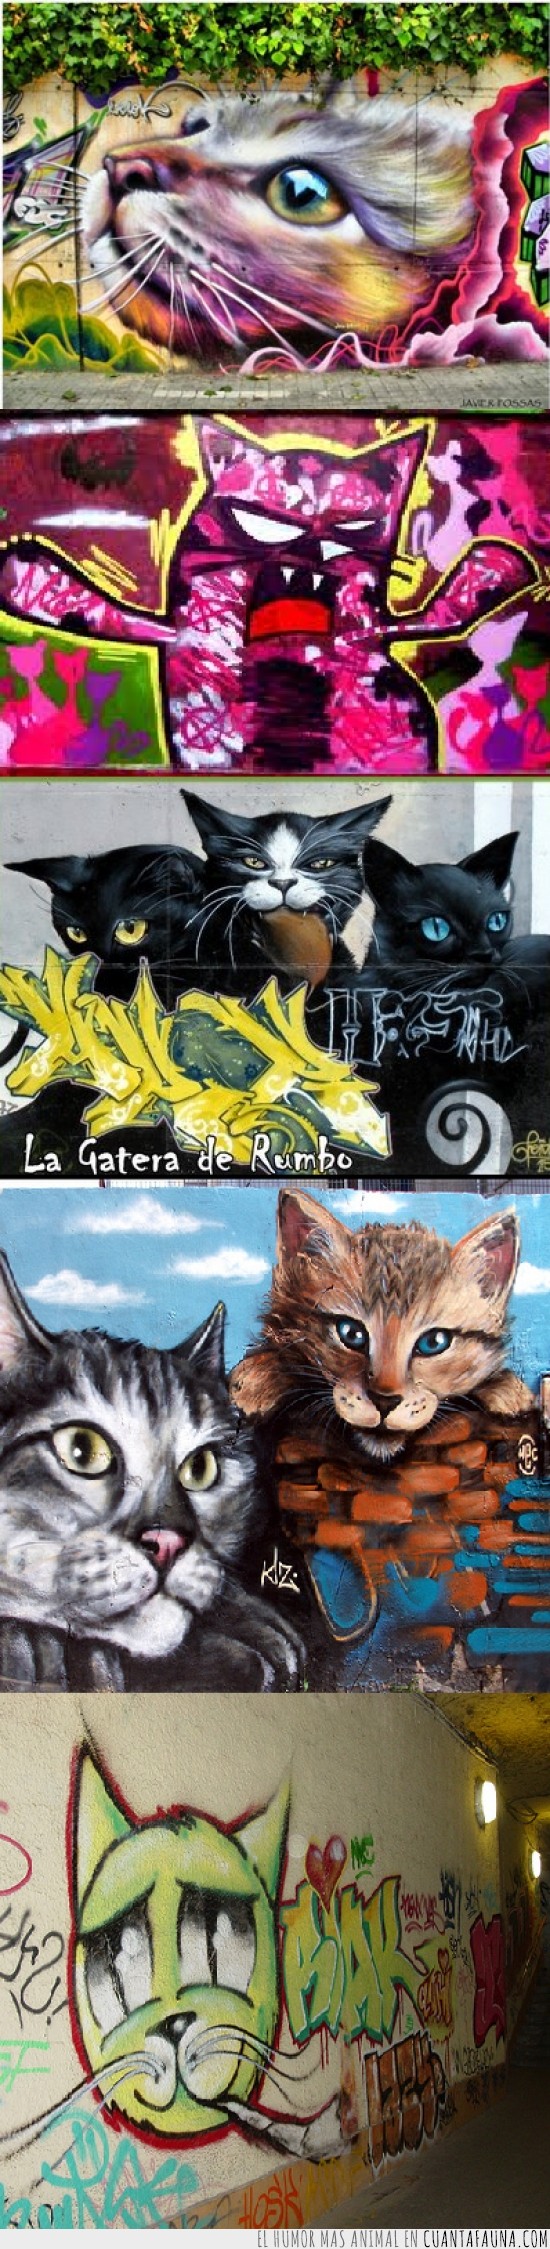 graffitis,gatos,mola,pintadas,grafiteros